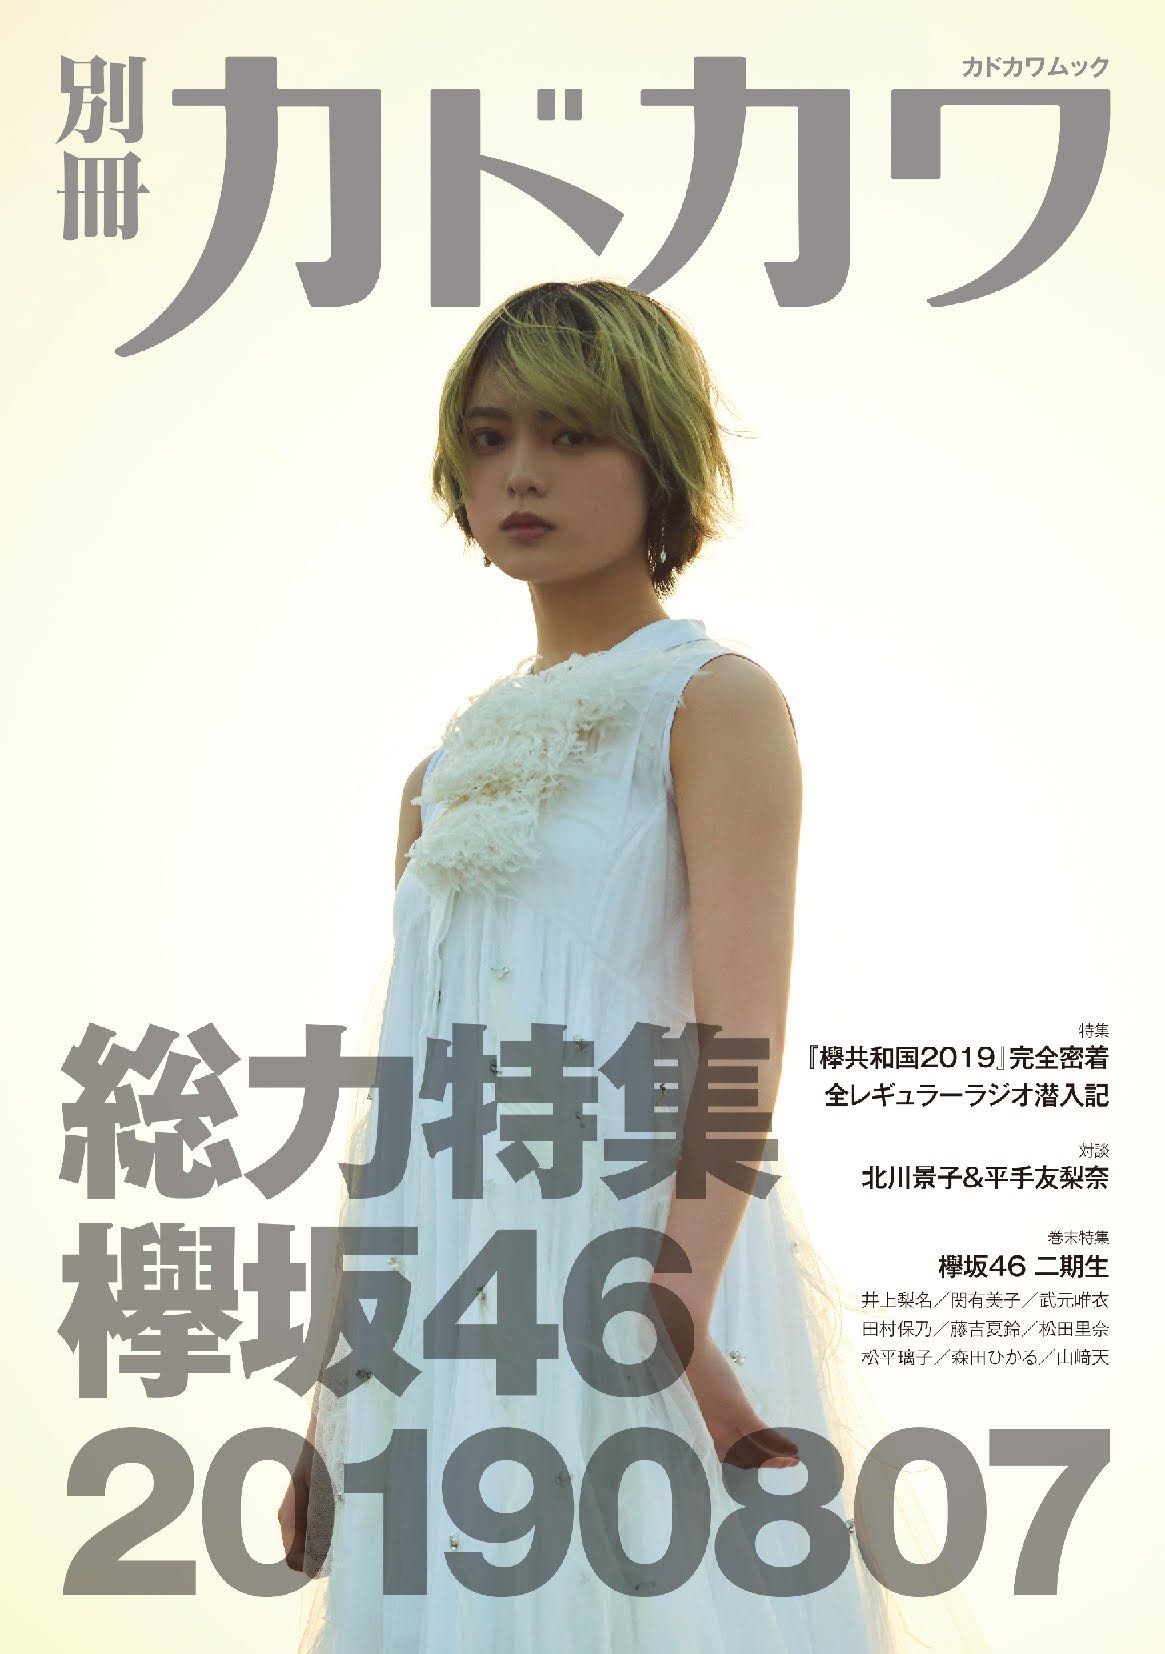 欅坂46特集本 “金髪”の平手友梨奈が表紙 北川景子と対談も | ORICON NEWS